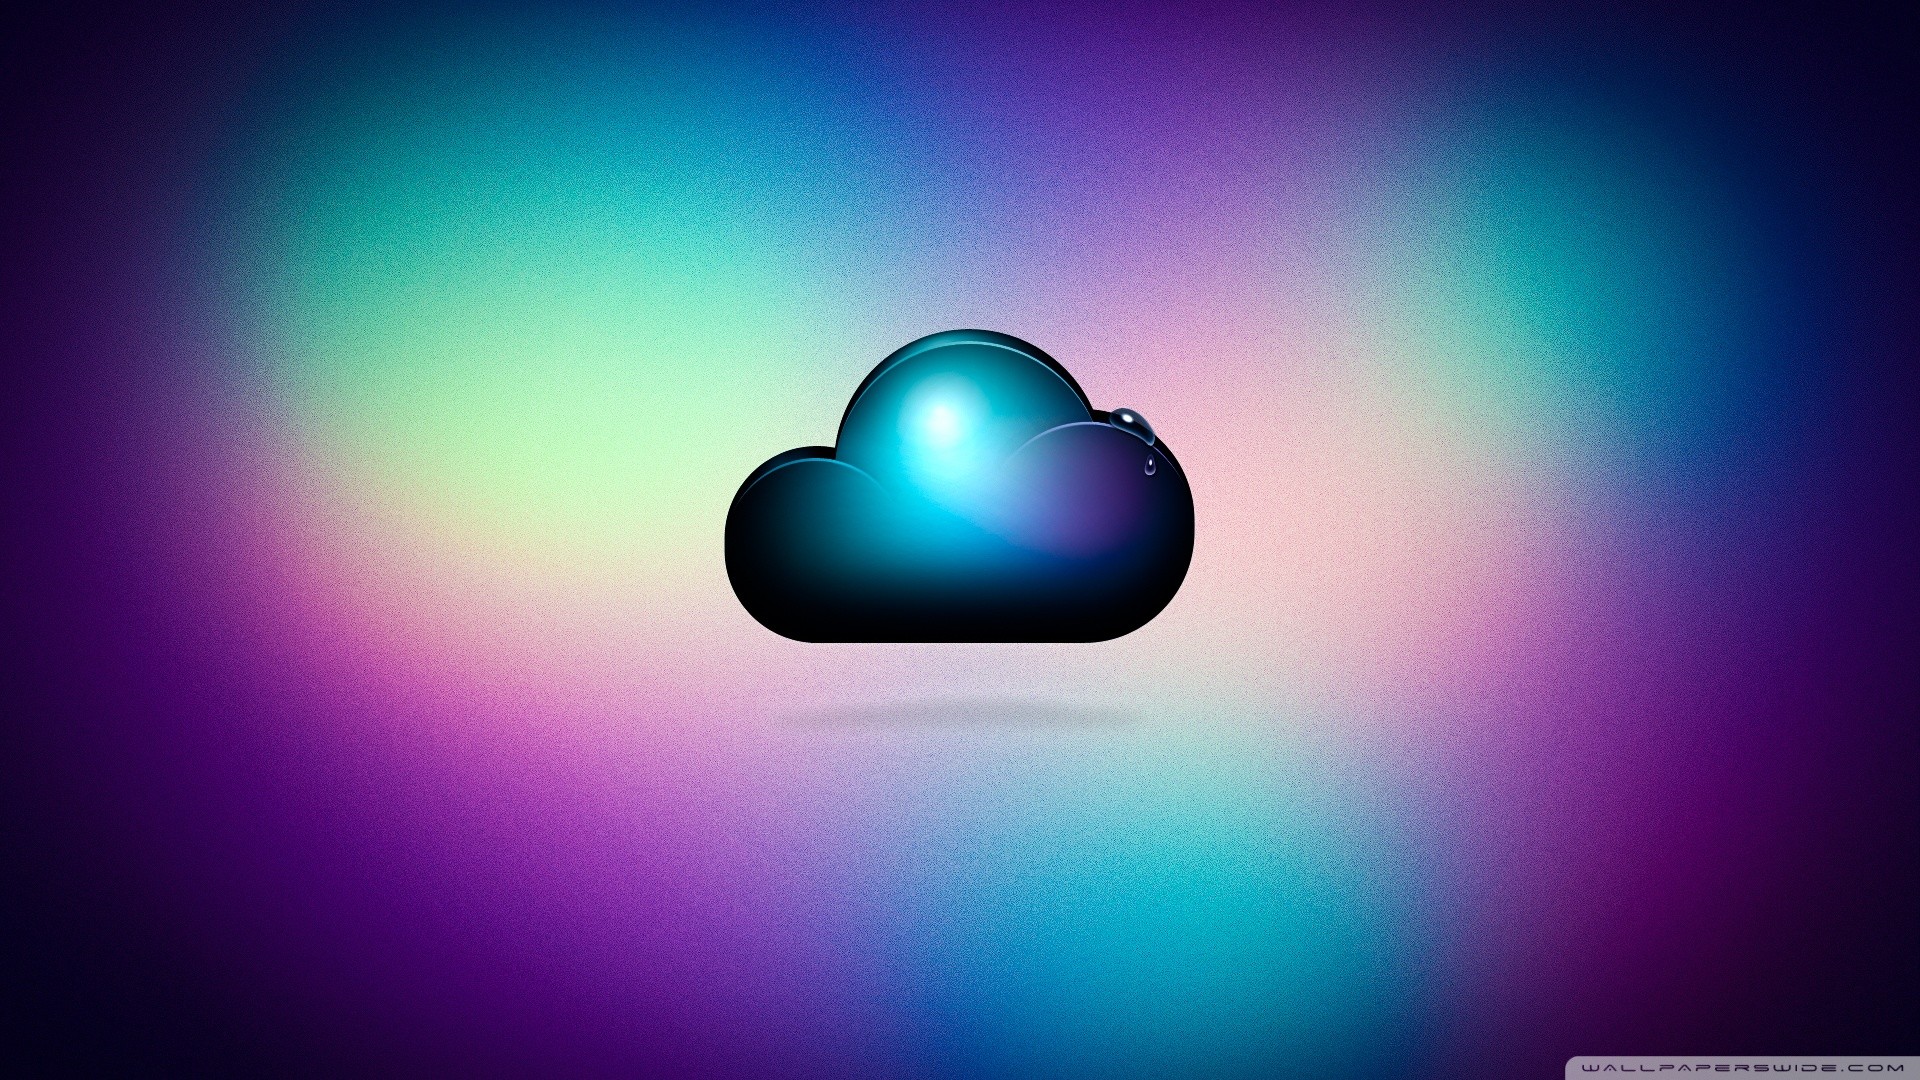 1920x1080 best cute cloud hd desktop wallpaper high definition fullscreen with cloud  wallpaper.